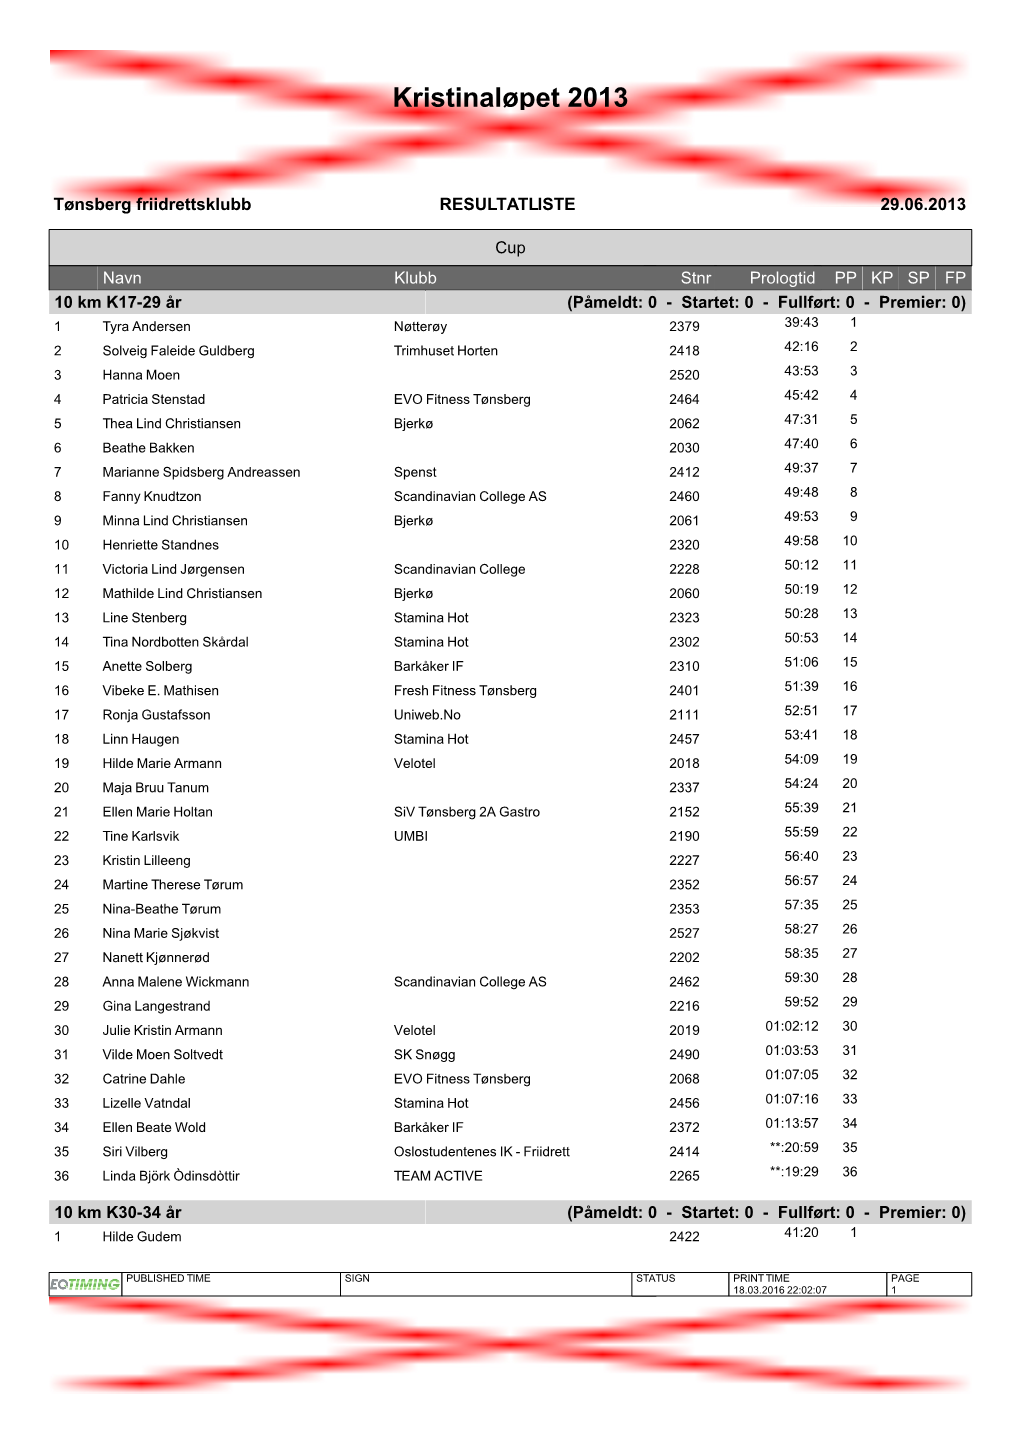 Kristinaløpet 2013 Resultatliste